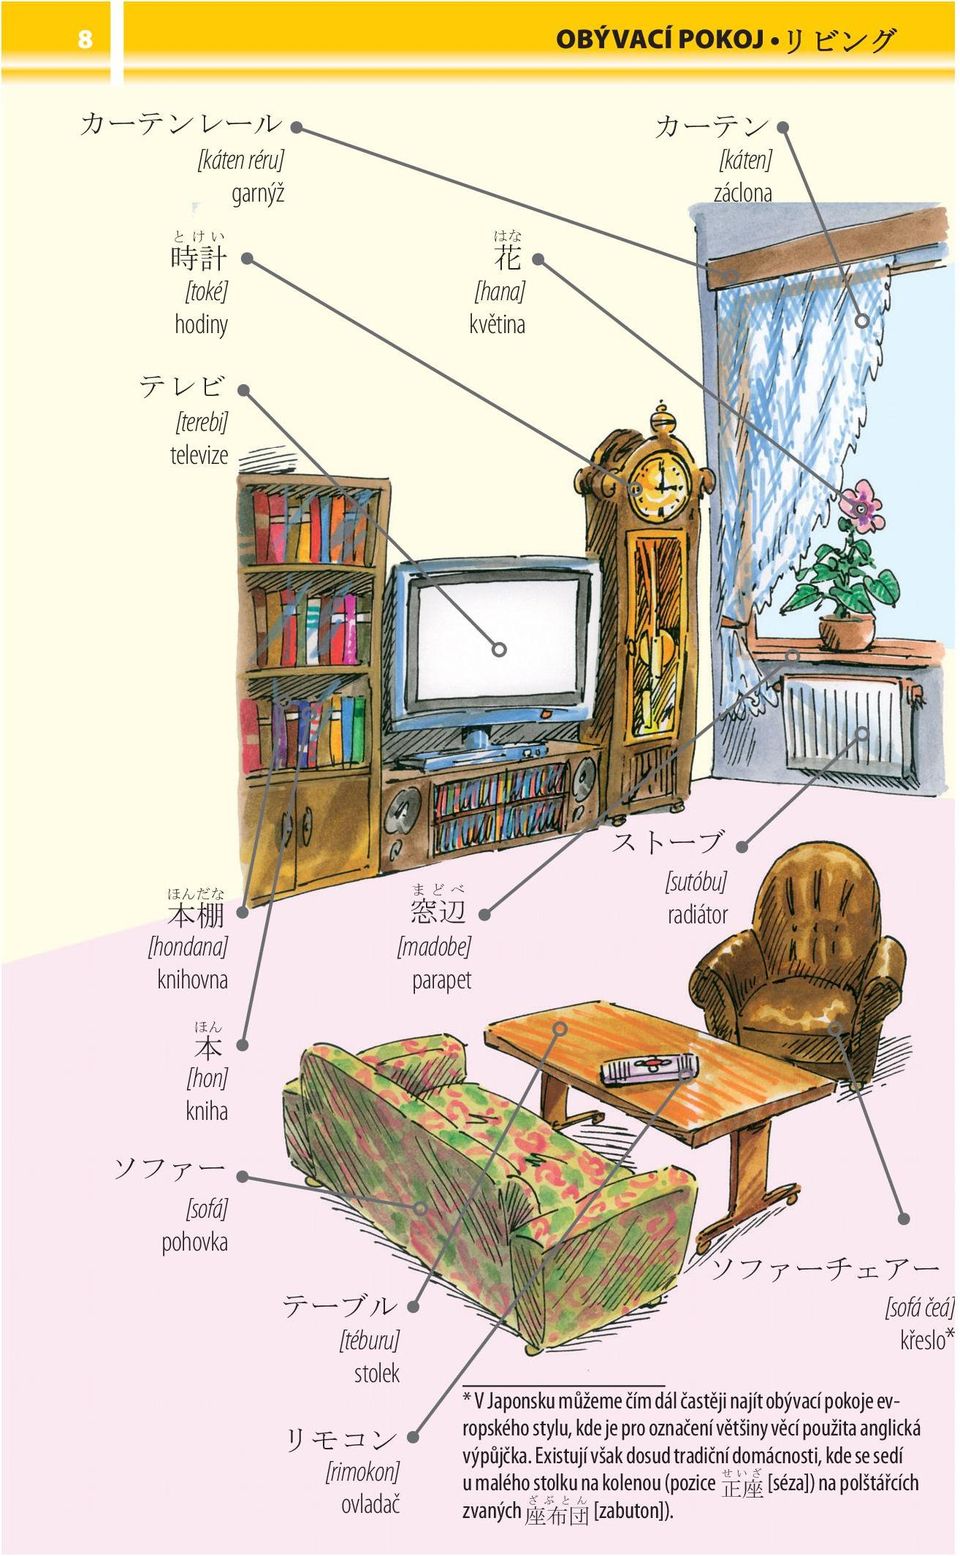 indd 8 ᐷᐊ ࢫ [sutóbu] radiátor [madobe] parapet [téburu] stolek ࢥ [rimokon] ovladač ᐷᐊ ᐷᐊ ᐷᐊ [sofá čeá] křeslo* * V Japonsku můžeme čím dál častěji